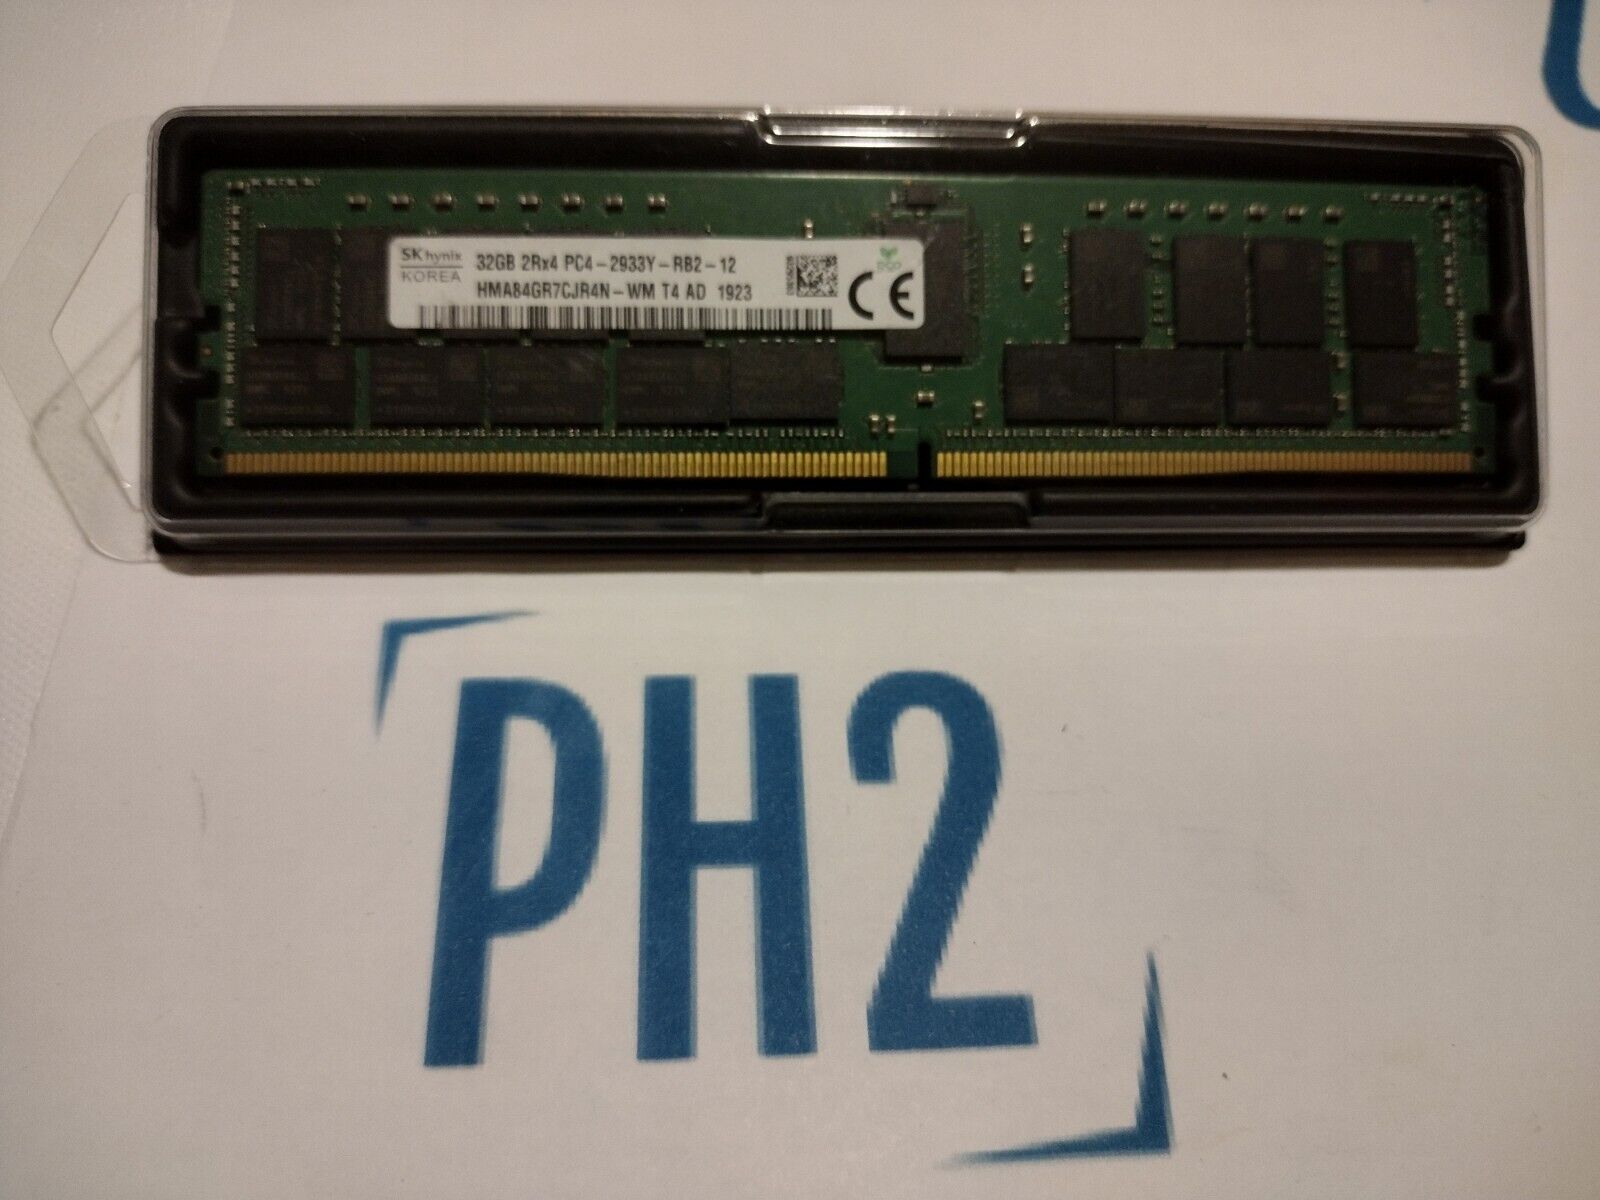 HYNIX  HMA84GR7CJR4N-WM 32GB 2RX4 PC4-2933Y-RB2 DDR4 RAM Module